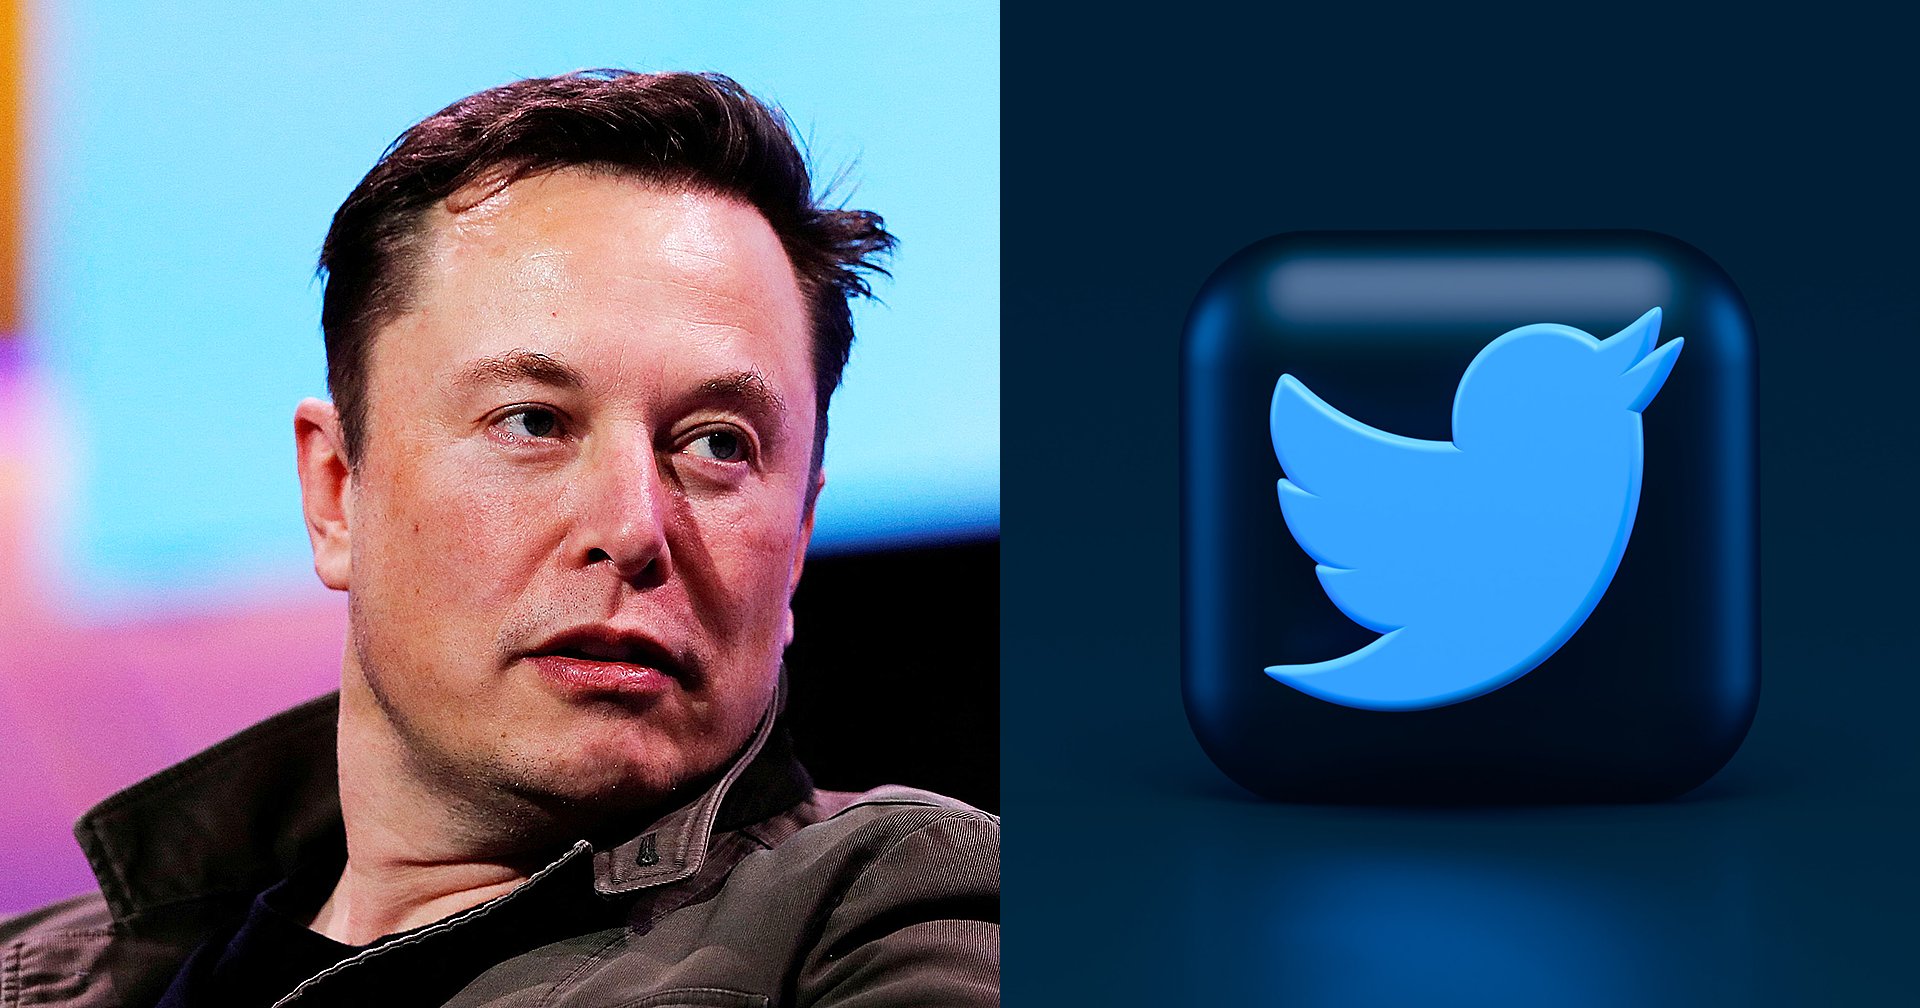 Elon Musk โชว์ศักยภาพ สั่งปรับหน้าโฮมเพจ Twitter ทันทีที่เข้าที่ควบคุมบริษัท